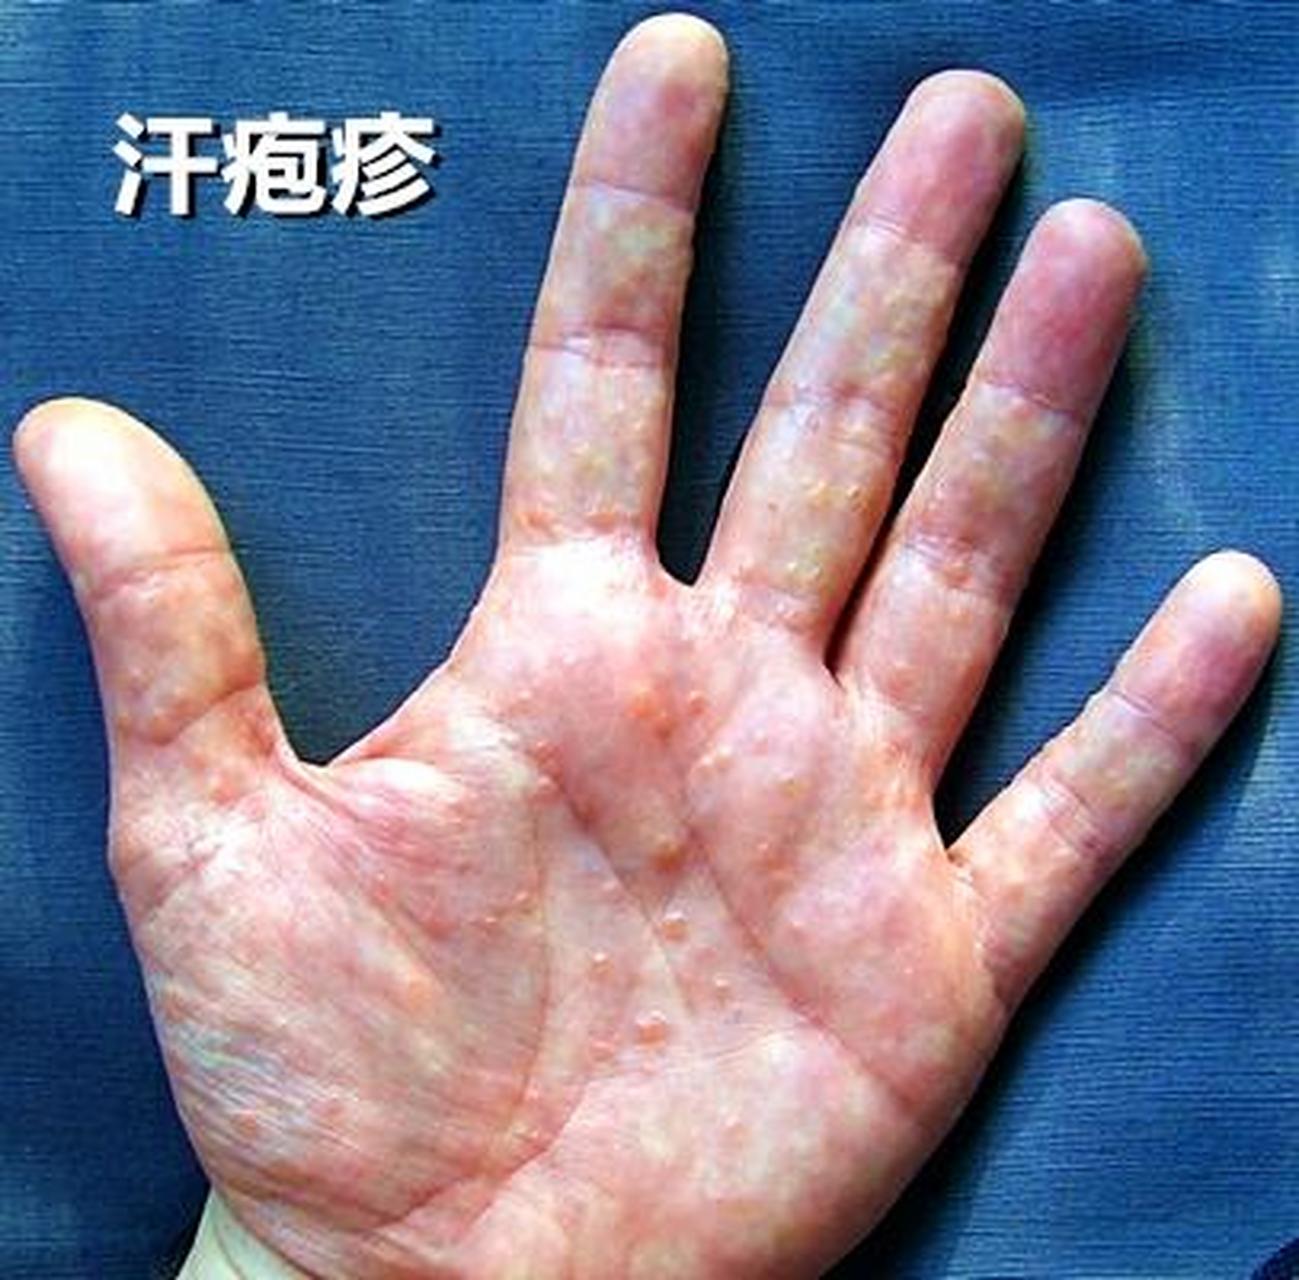 汗疱疹是由于皮肤受到过度热量和潮湿的影响而引起的